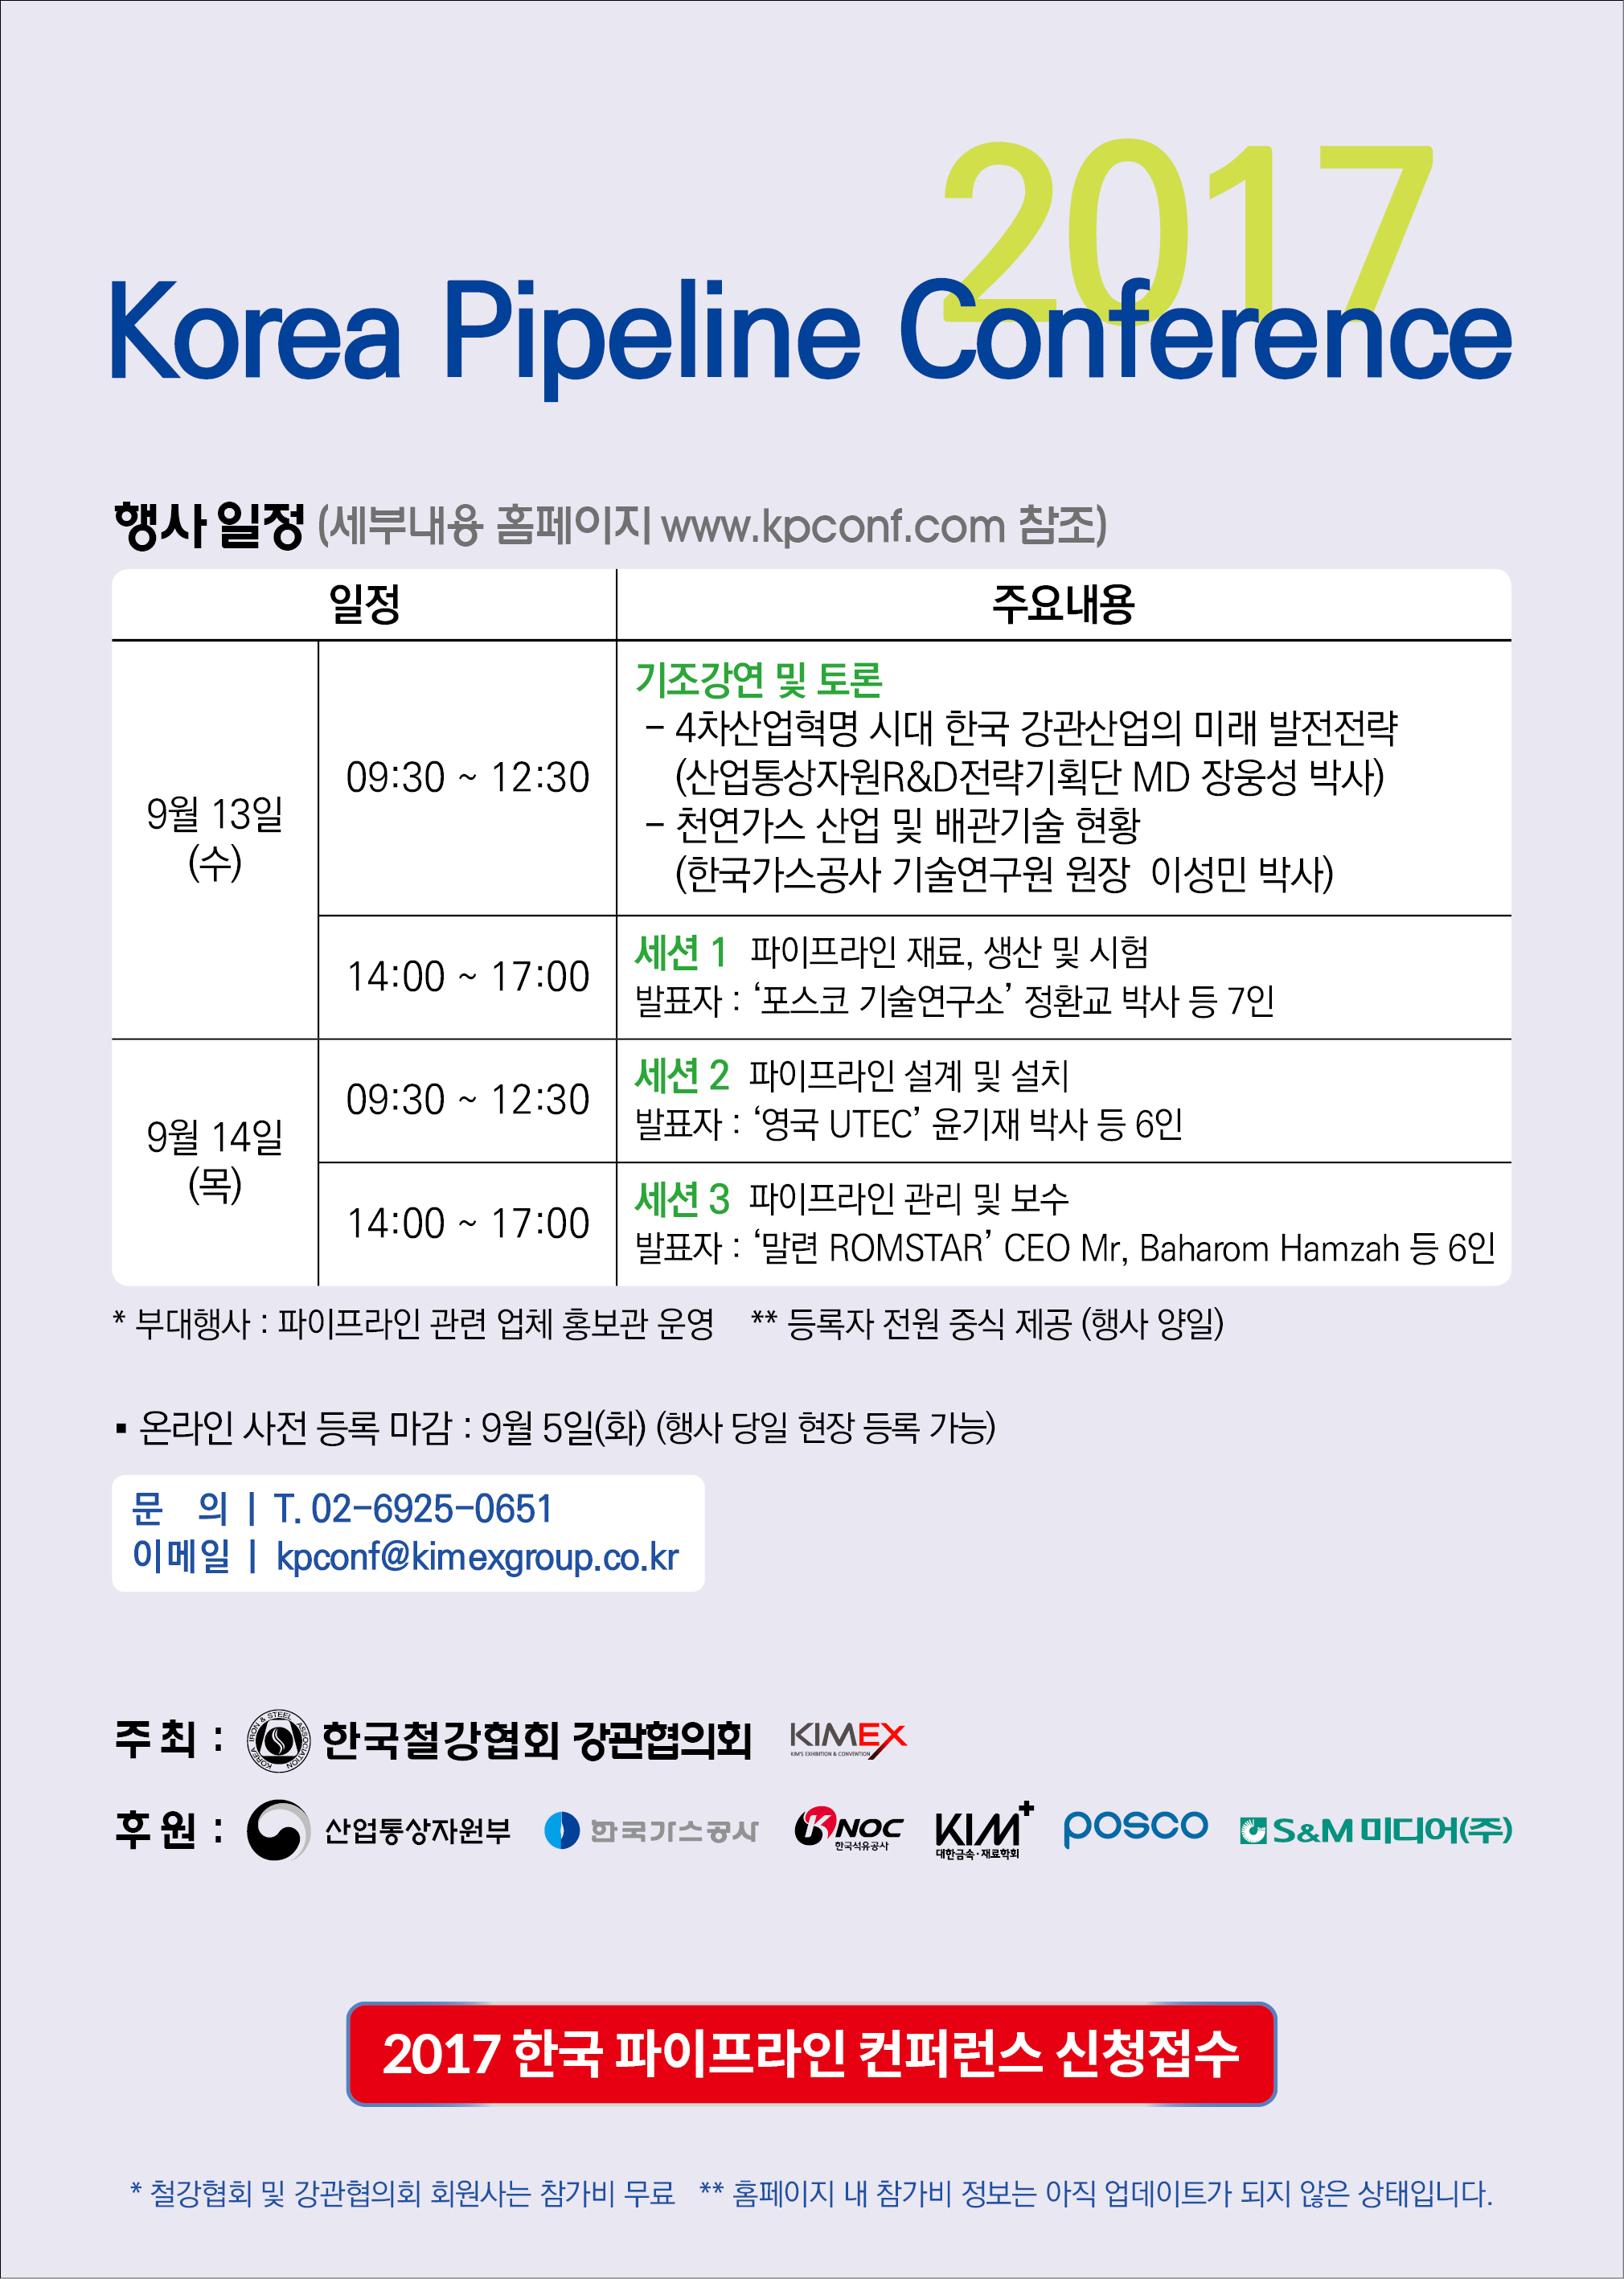 한국파이프라인 컨퍼런스 개최.jpg